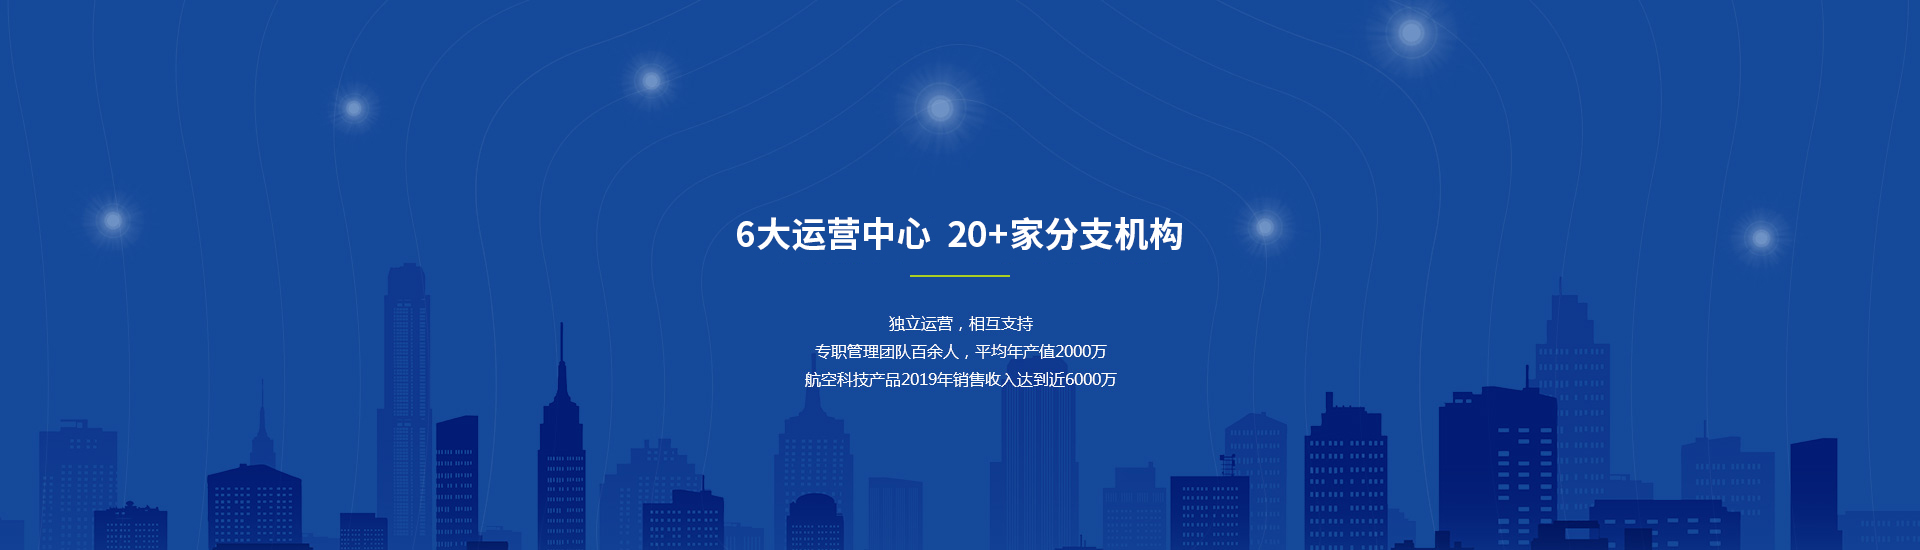 华飞玩球网站(中国)责任有限公司典型教育产品